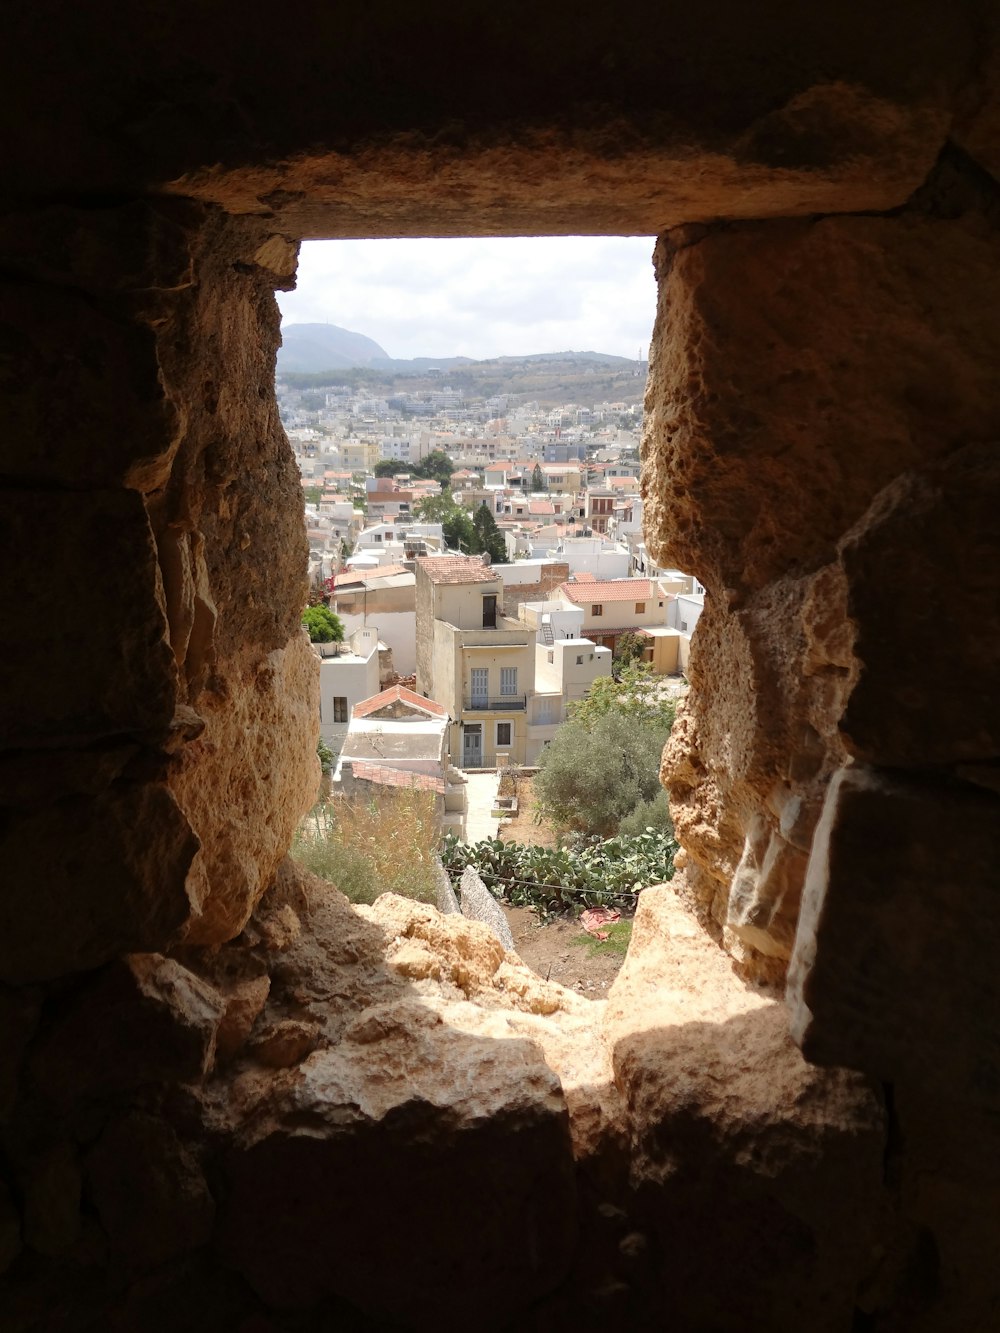 une vue d’une ville depuis une fenêtre dans un bâtiment en pierre